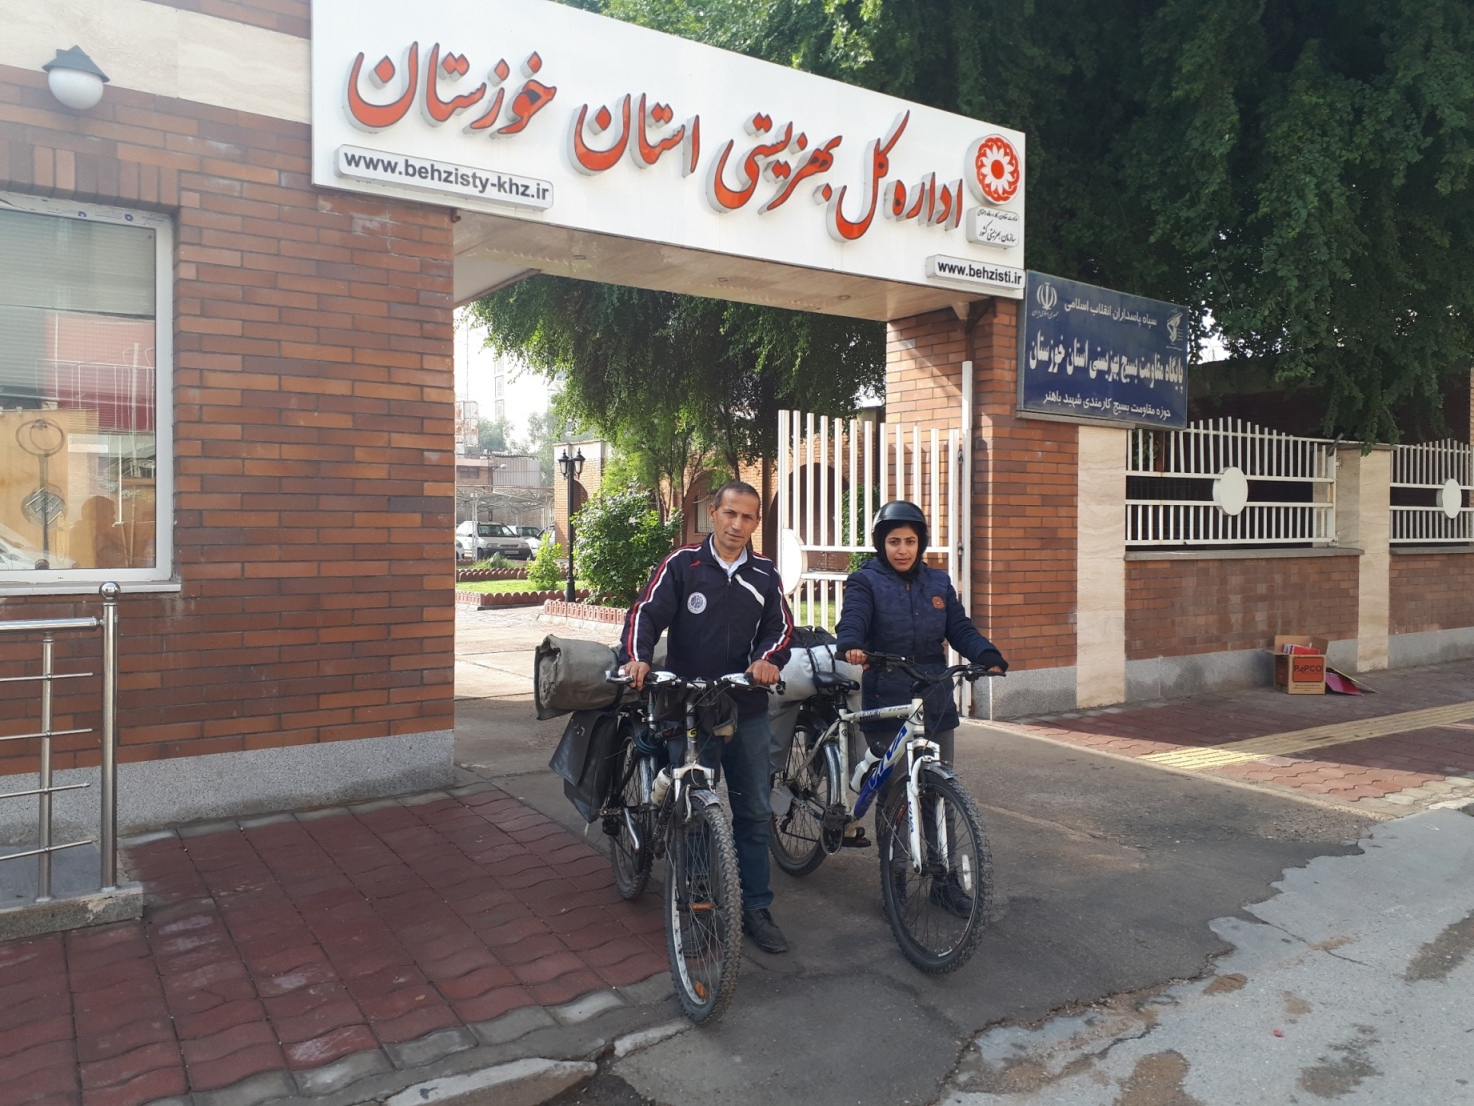 حضور دوچرخه سواران حامل پیام صلح و دوستی معلولین در بهزیستی خوزستان